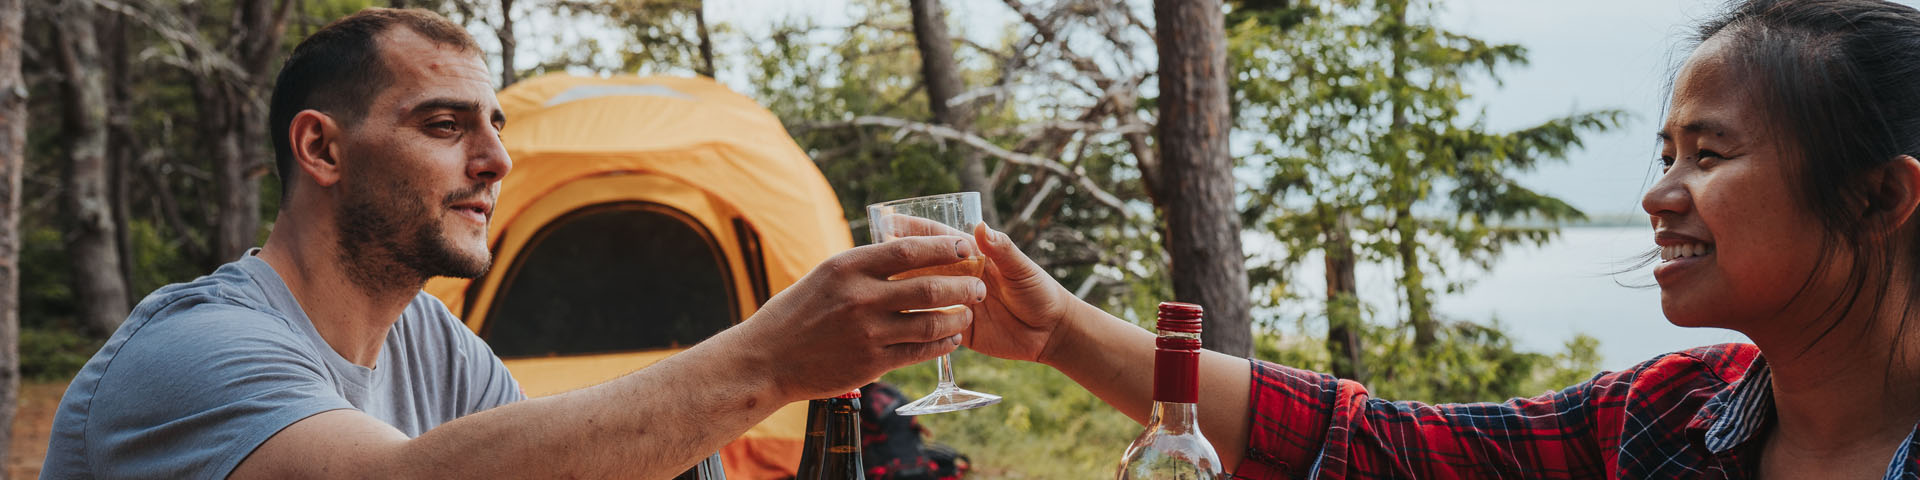 Un couple célèbrent avec un verre près de leur tente.